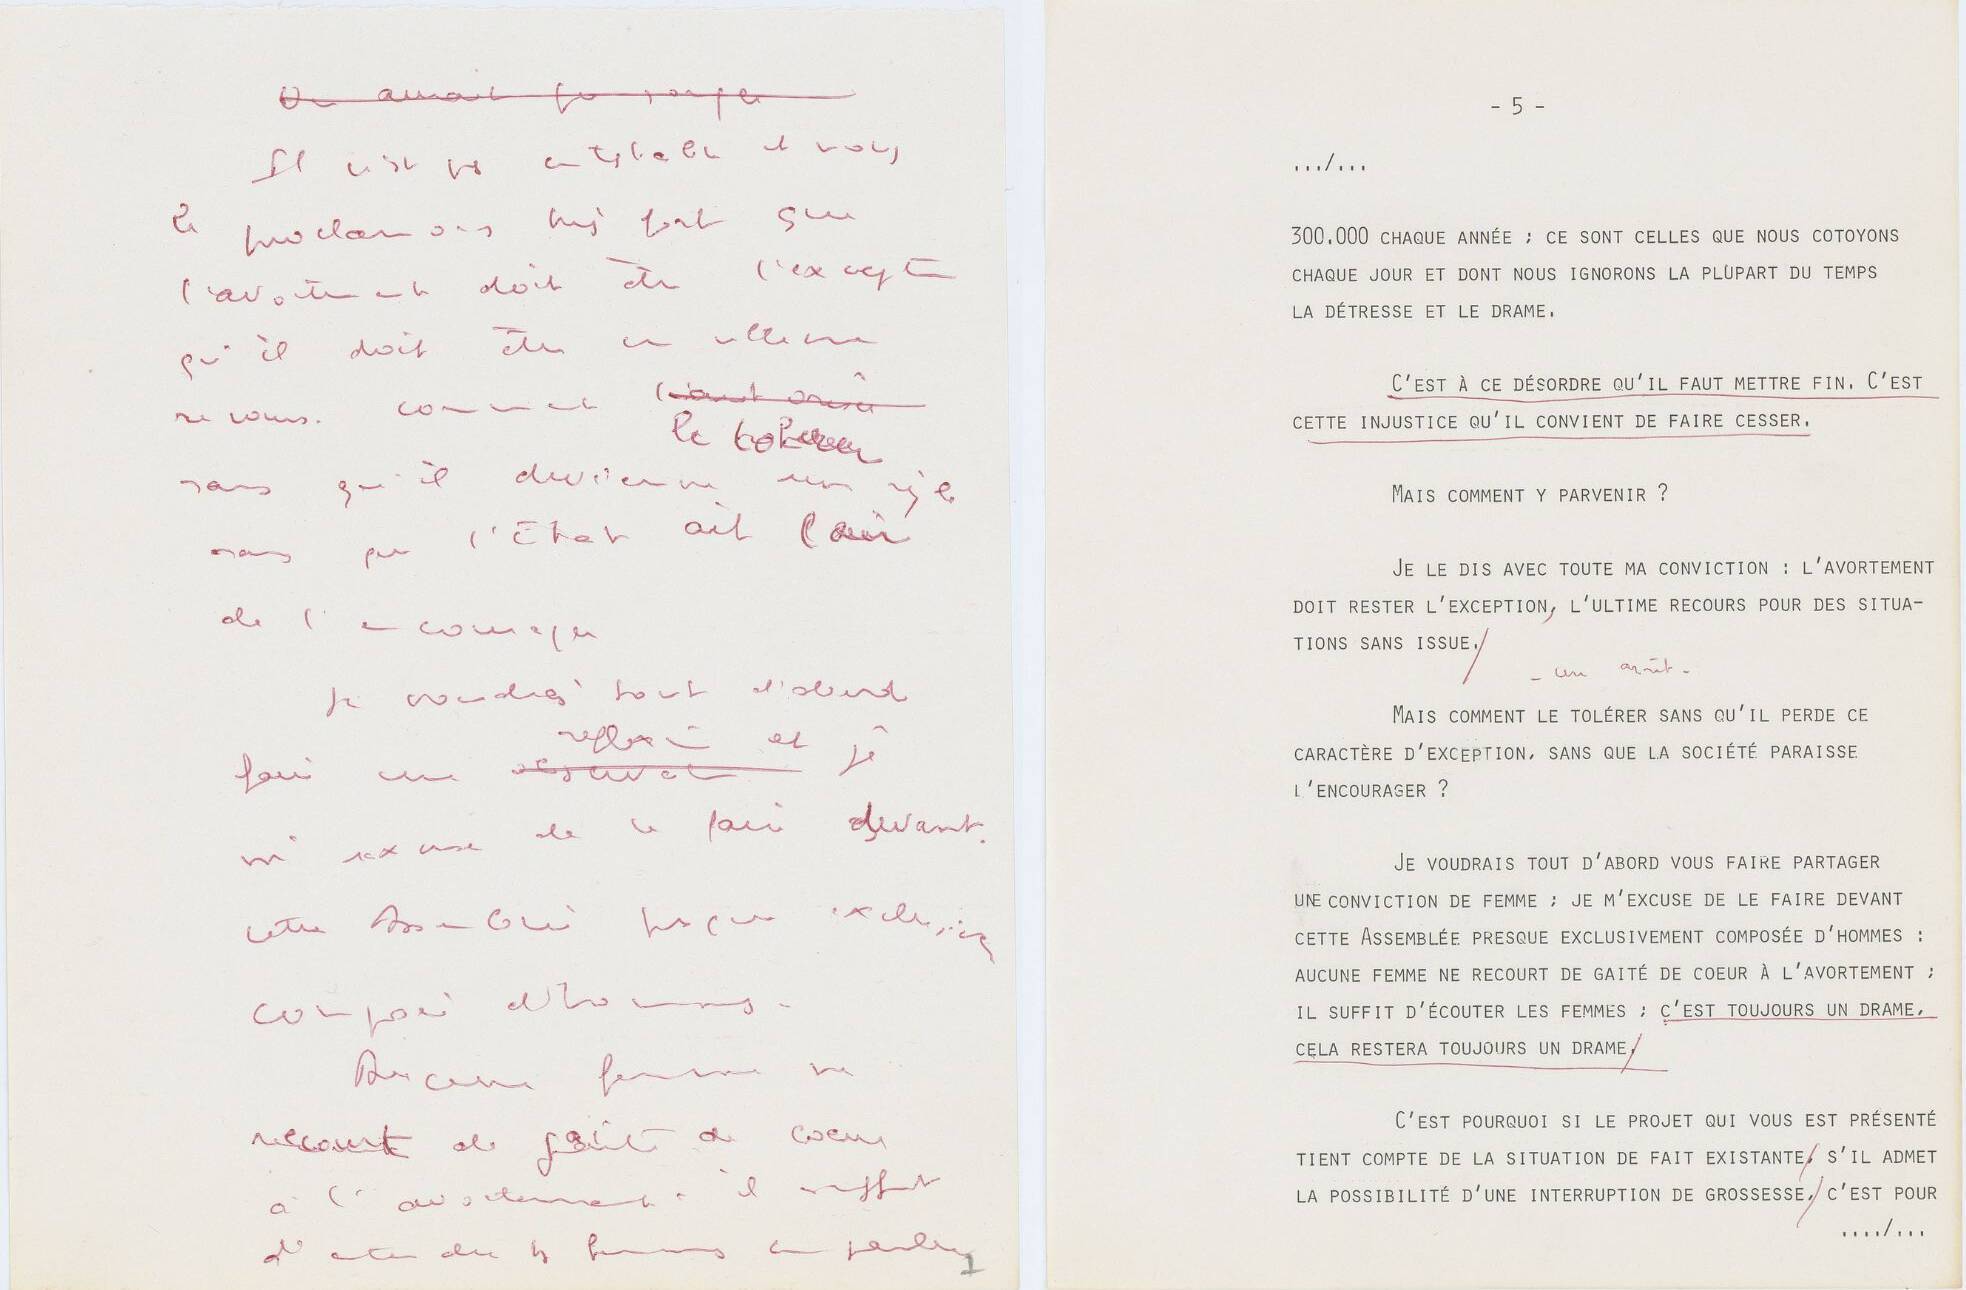 Brouillon manuscrit et version dactylographiée du discours prononcé par Simone Veil à l'Assemblée nationale le 26 novembre 1974. Archives nationales.